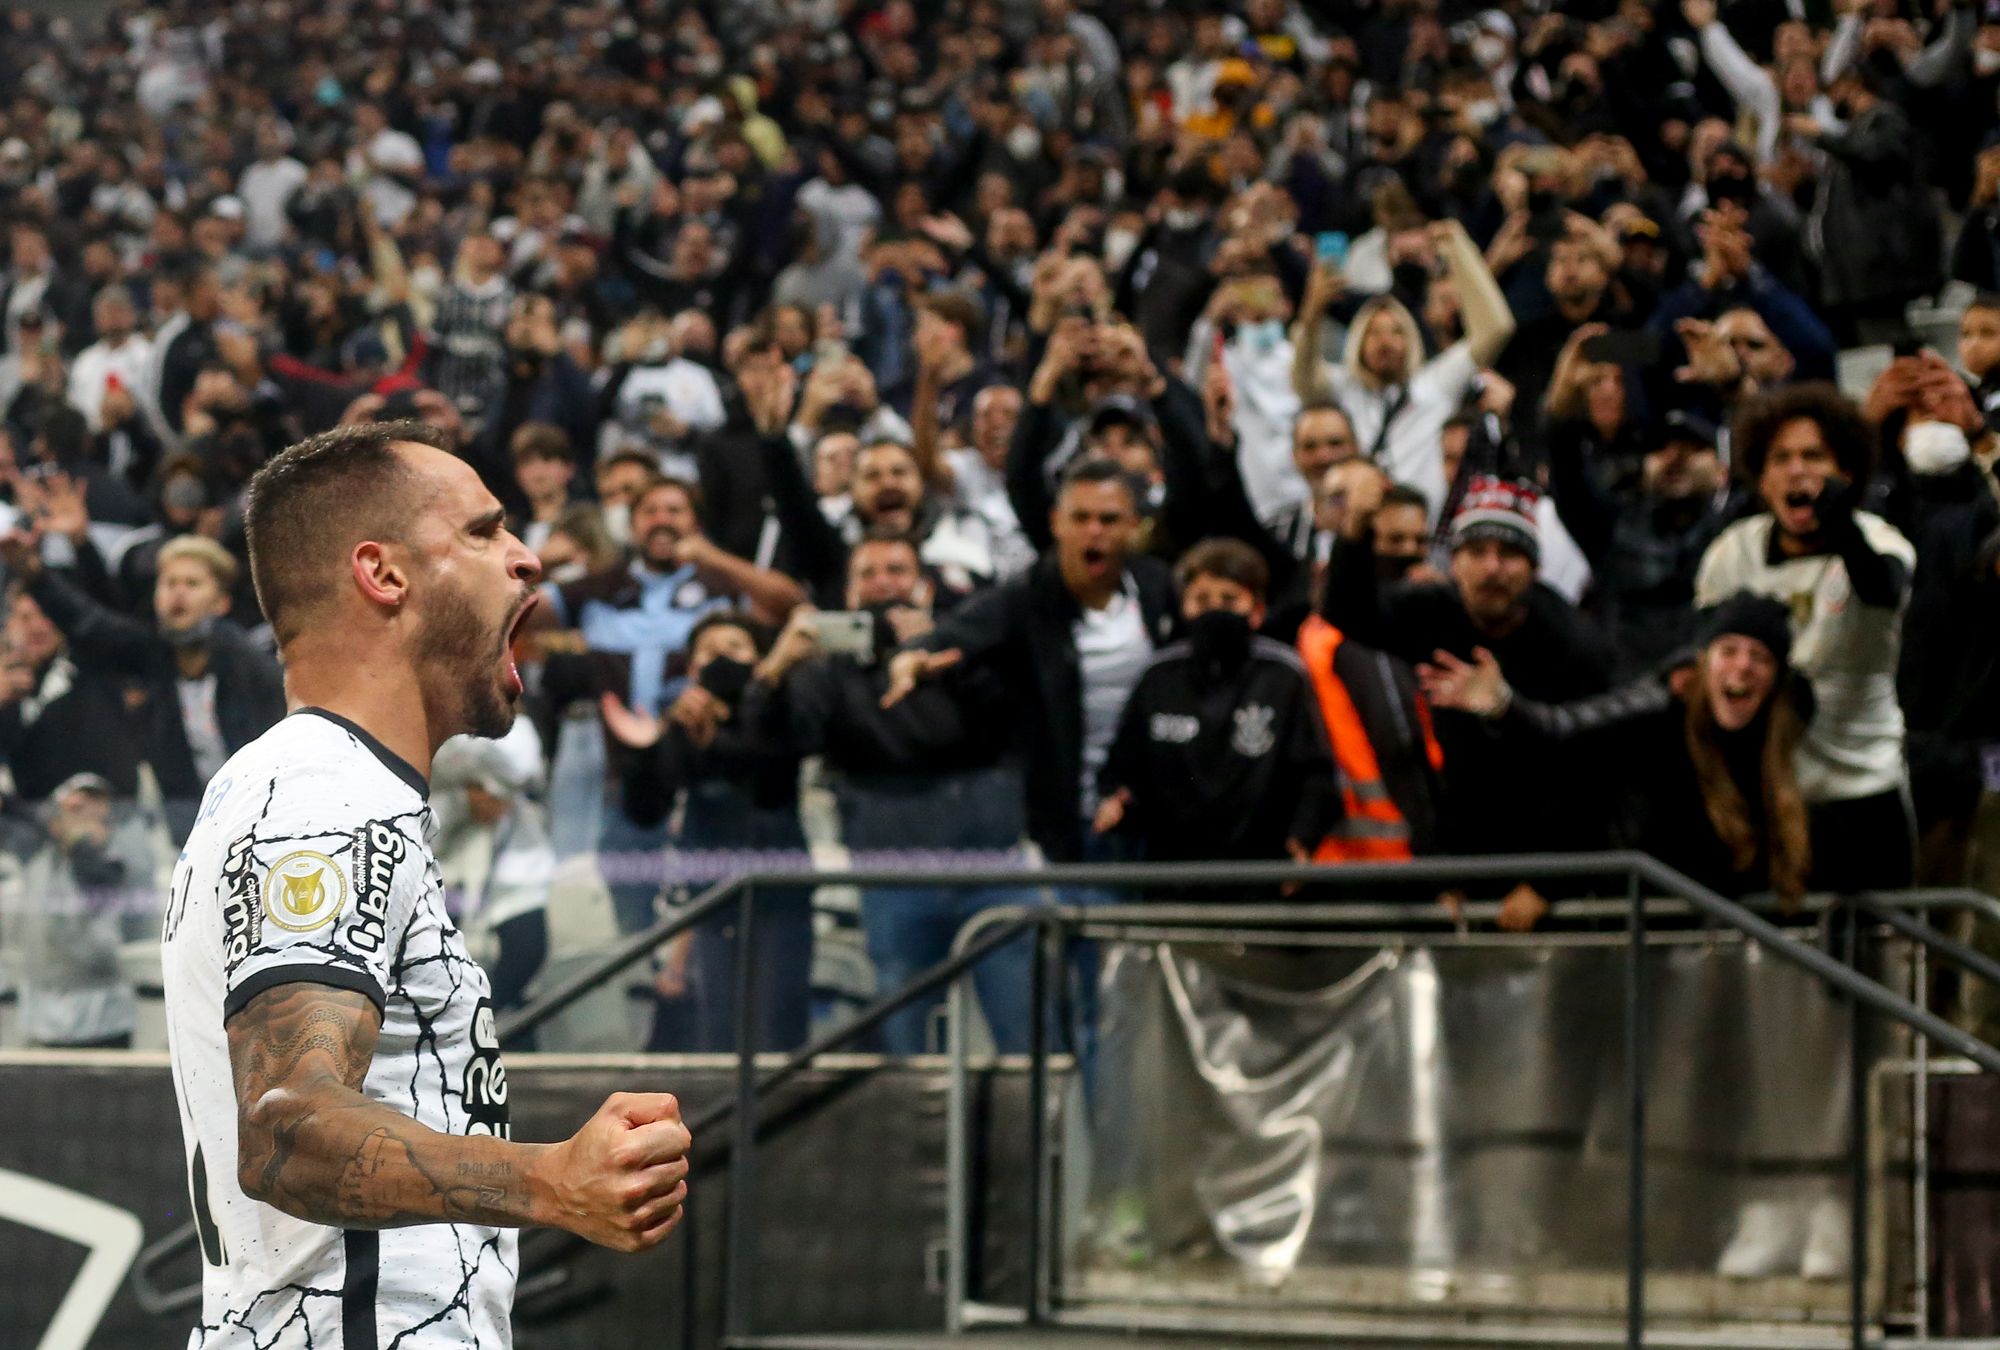 Destaque da Libertadores, é amado por seus torcedores, agora o Corinthians  o quer